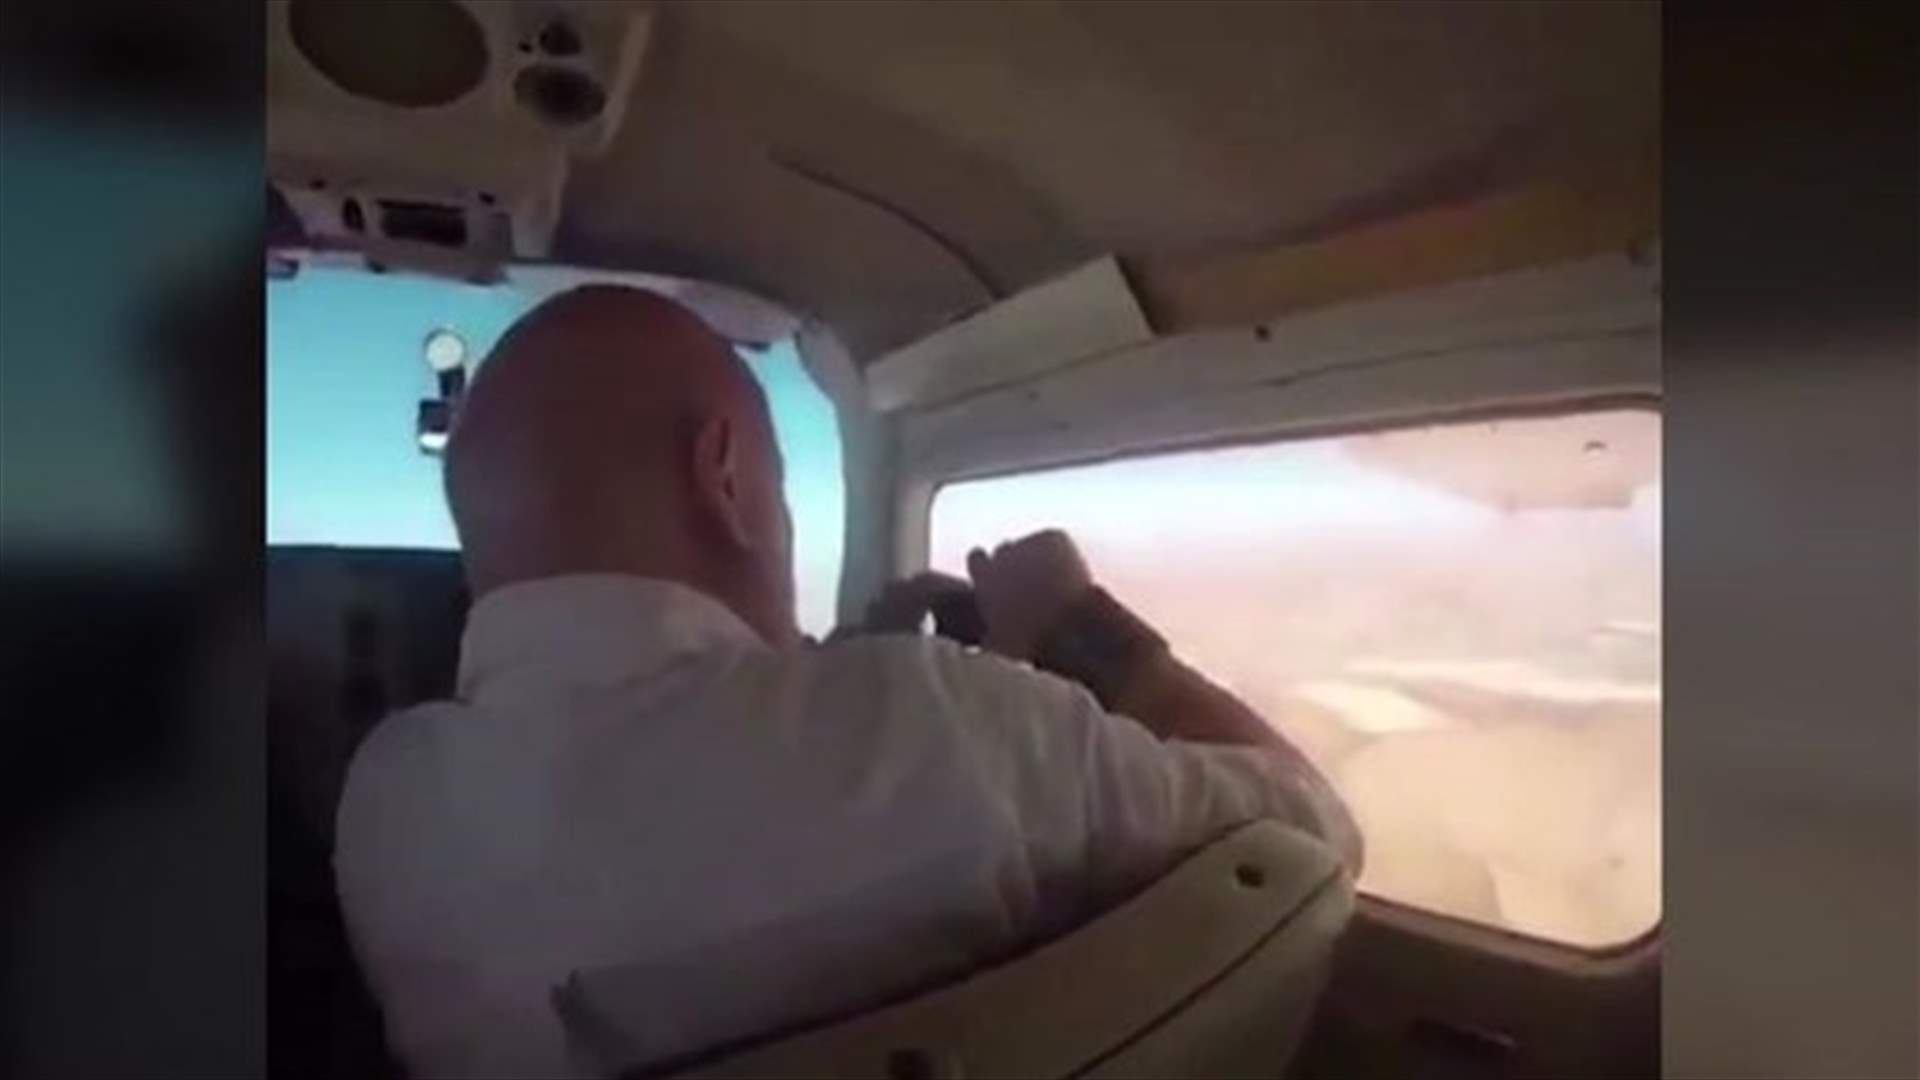 بالفيديو: فتح نافذة الطائرة ليلتقط صورة... وهذا ما حدث!